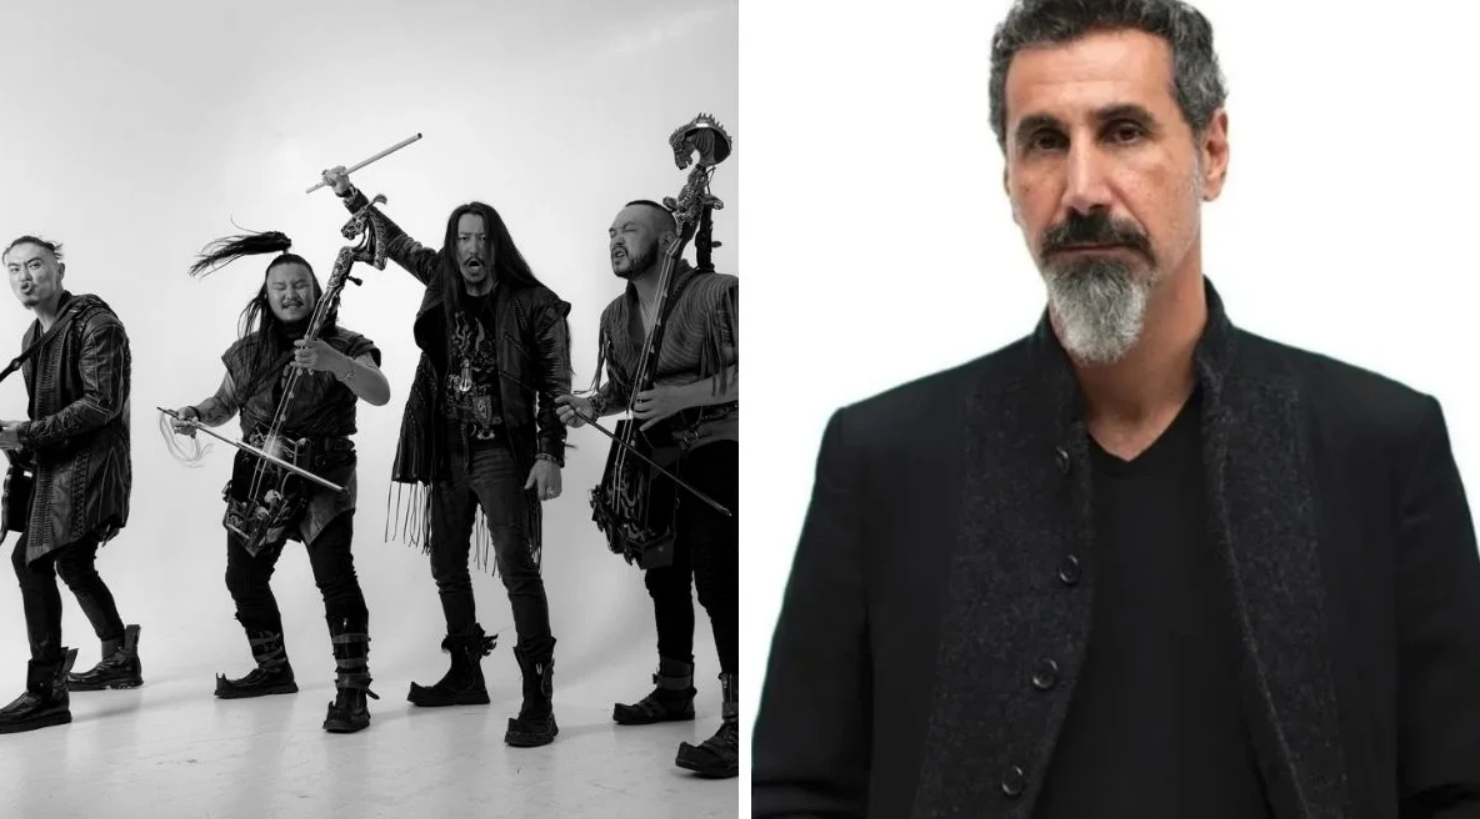 The HU lança nova versão de “Black Thunder” com Serj Tankian